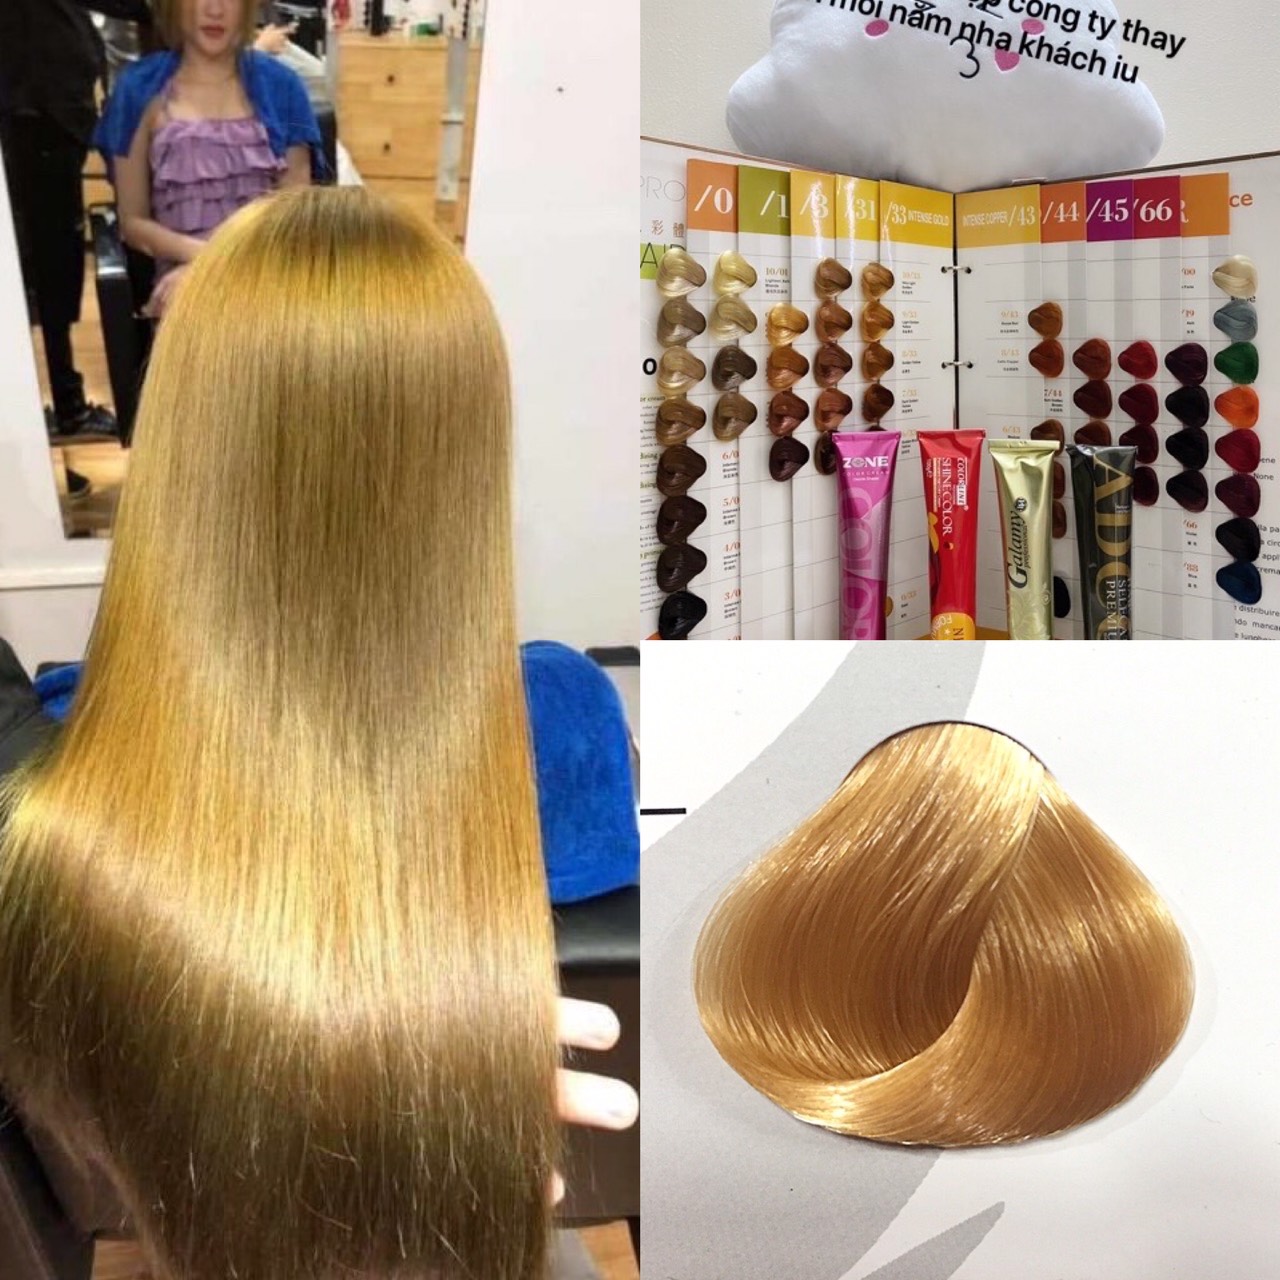 Nhuộm tóc màu Vàng Sáng Mã 9/33 9.3 trên trang Lazada sẽ là sản phẩm hoàn hảo giúp bạn có được mái tóc nhuộm màu sáng và rực rỡ. Đảm bảo chất lượng và an toàn cho tóc của bạn, bạn sẽ không phải lo ngại về tác hại hay kết quả không như mong đợi.